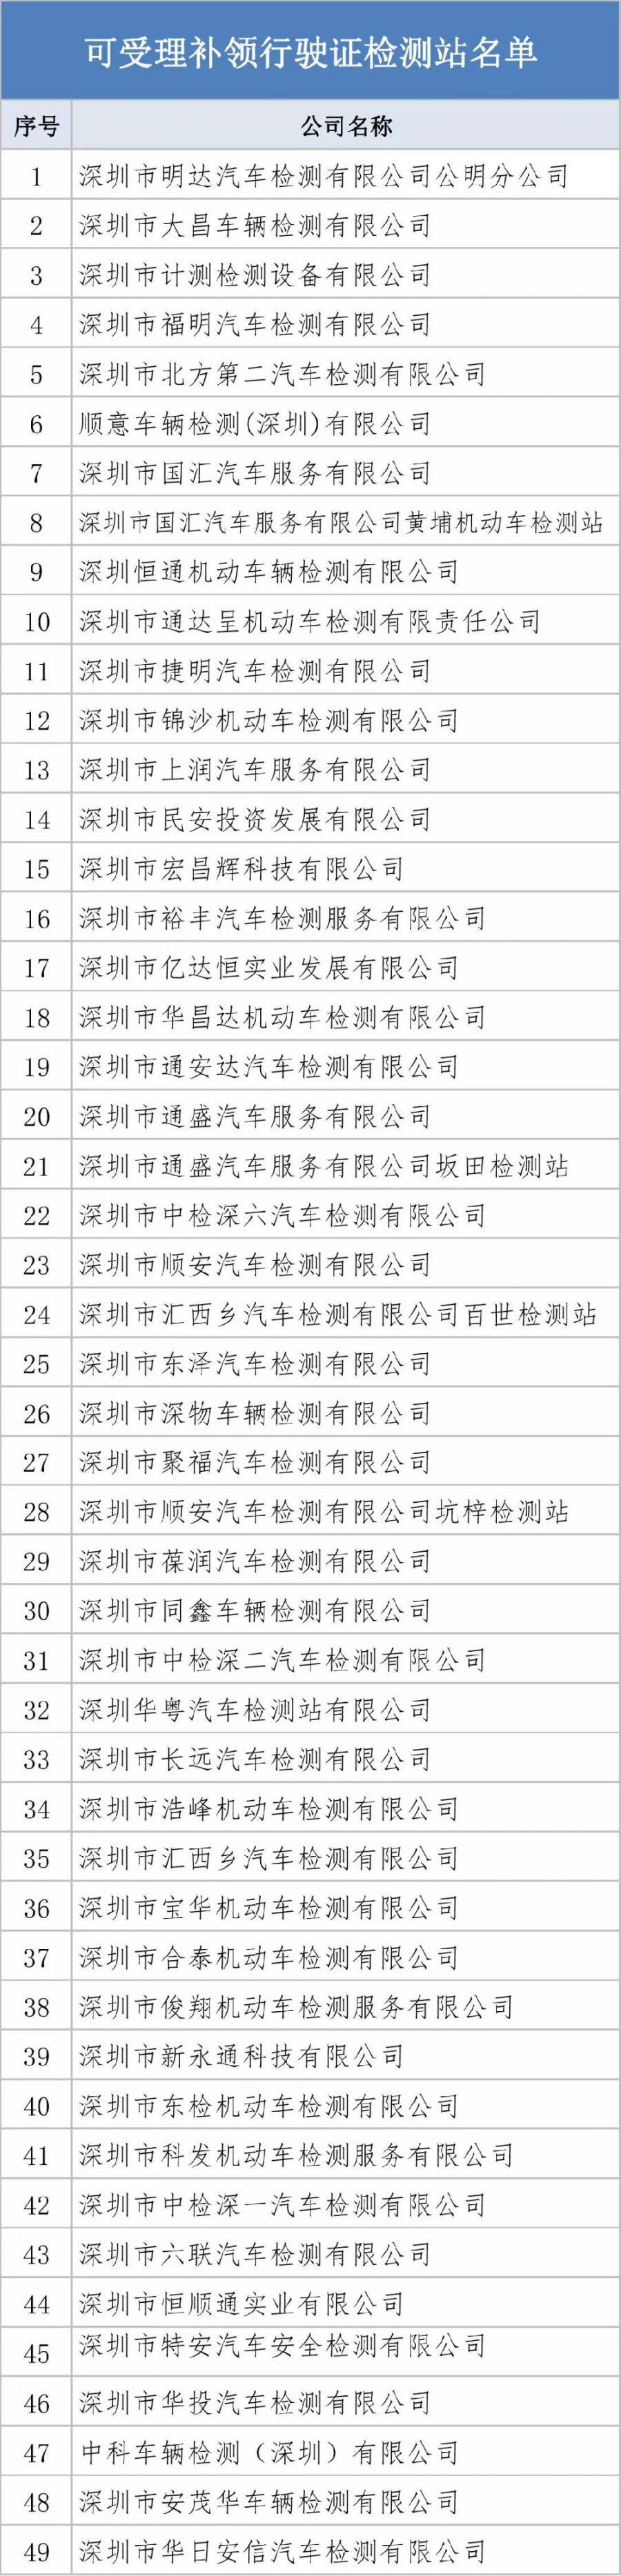 深圳49个车辆检测站可补换领行驶证 现场办理现场拿证